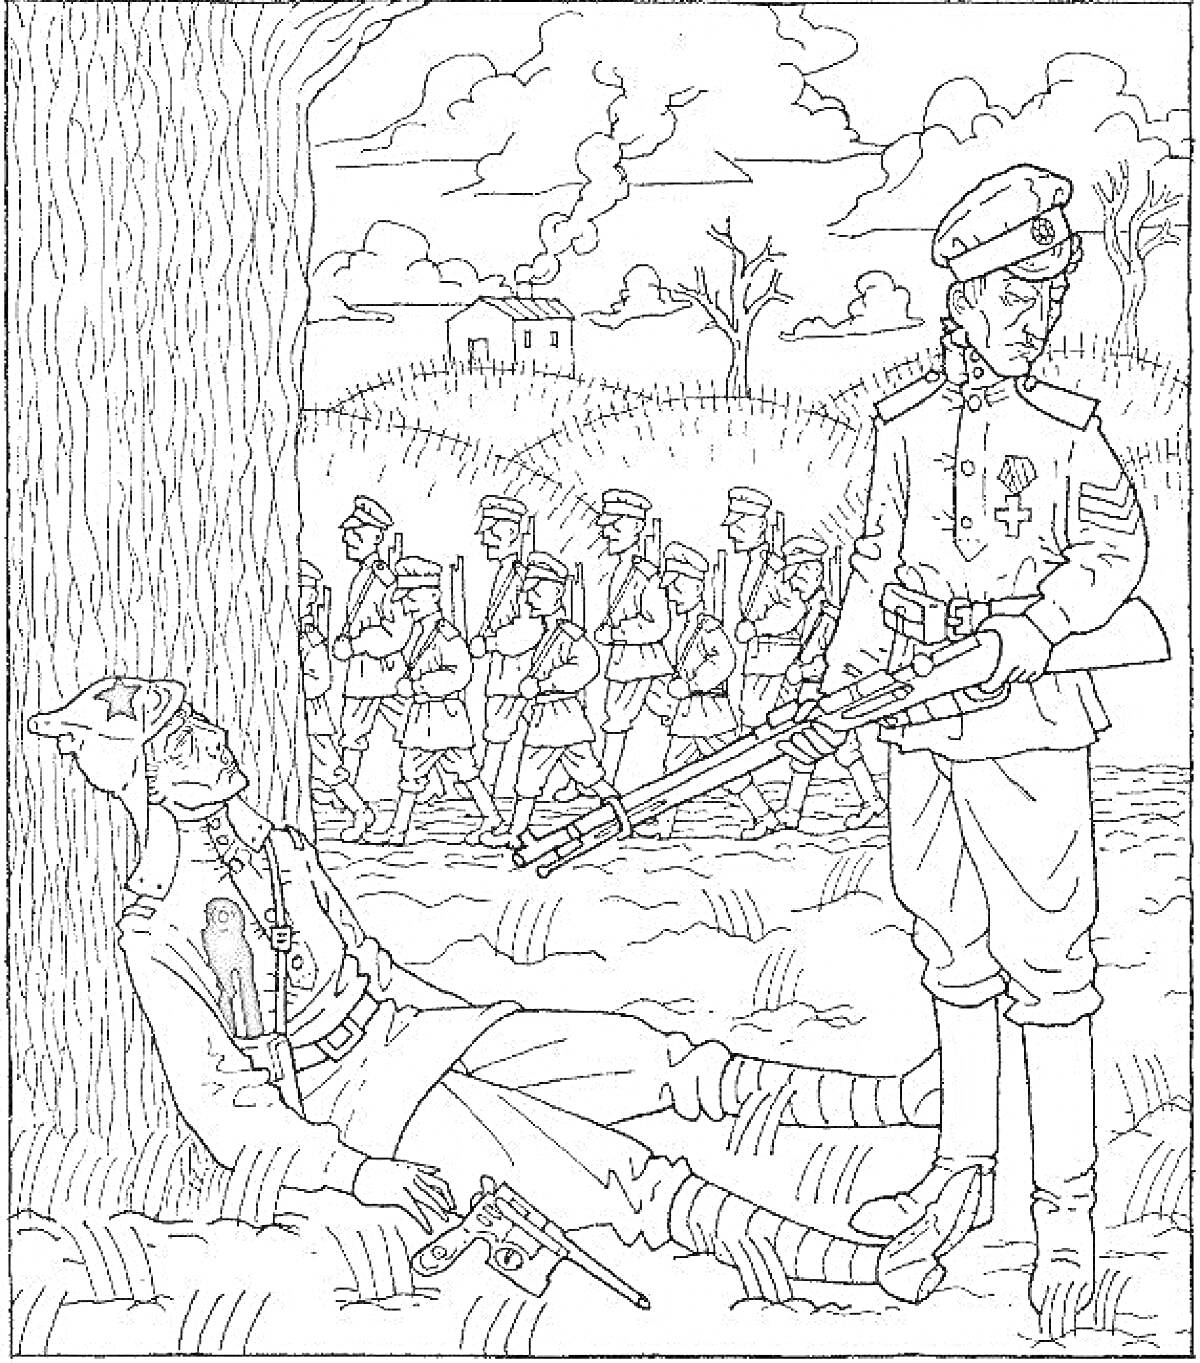 Офицер с винтовкой у дерева с павшим солдатом и марширующие войска на фоне поля с деревьями и домами